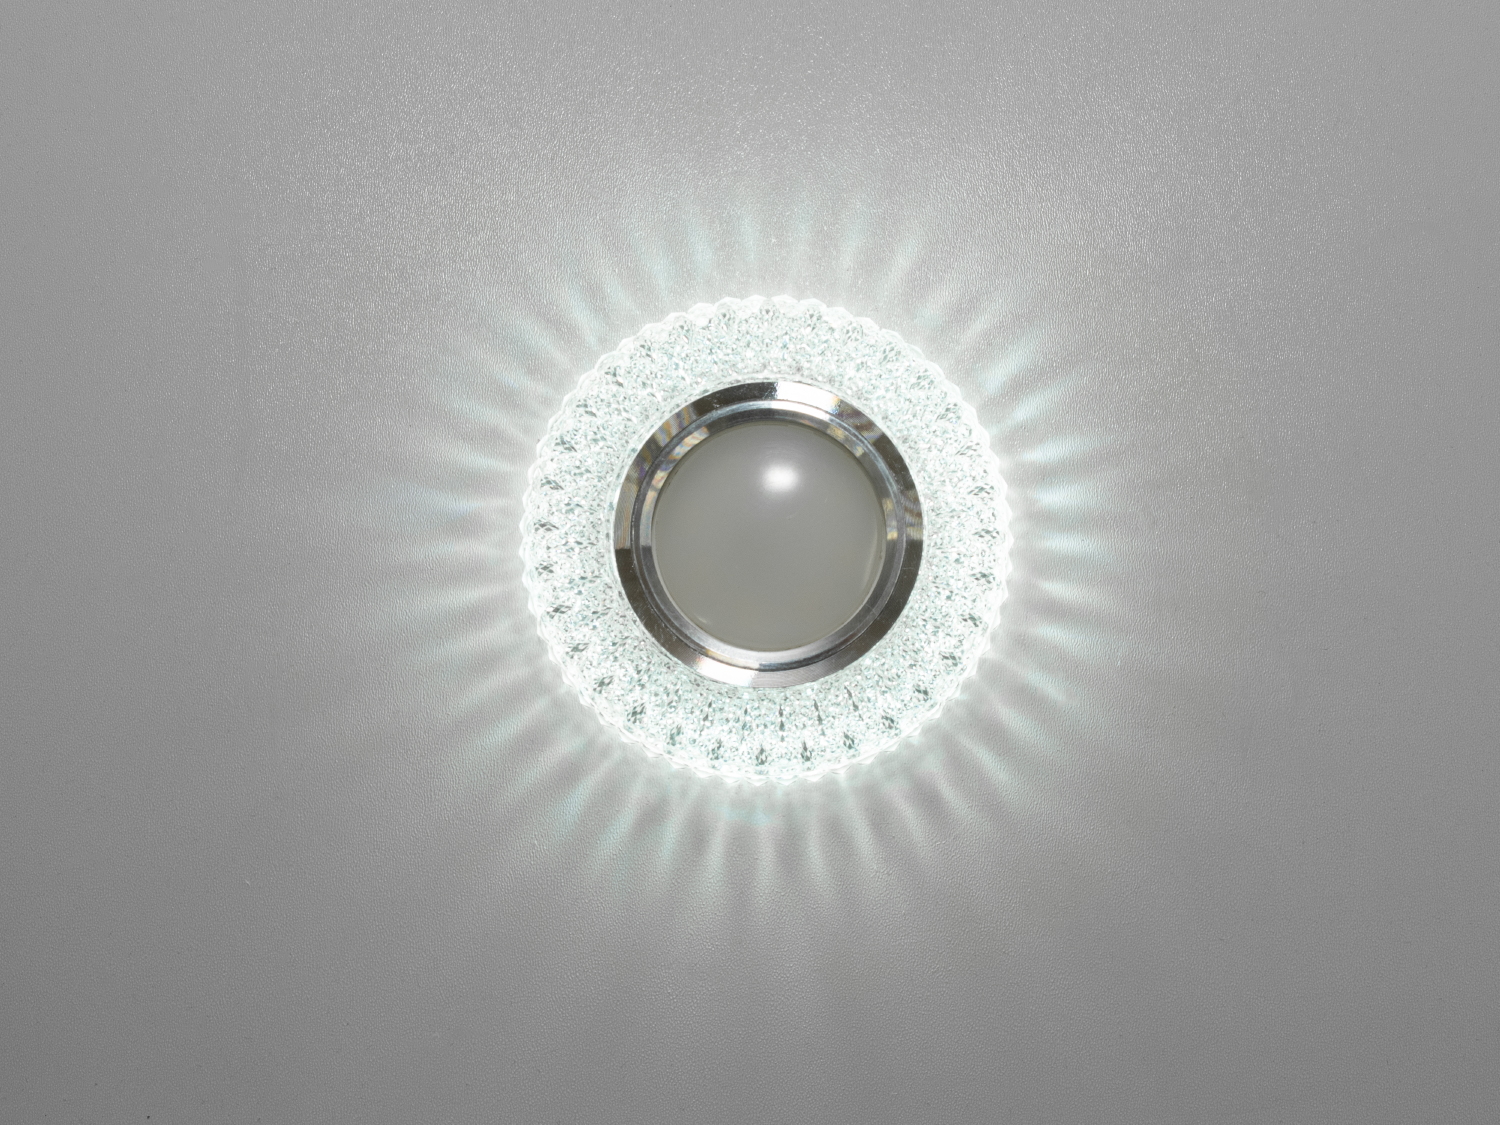 Точковий світильник з LED підсвічуванням є останнім криком моди від ТМ «Діаша», перетворюючи звичайне освітлення на чарівне дійство світла та тіней. Цей світильник не просто освітлює простір, він дарує йому життя і динаміку, завдяки своєму унікальному дизайну та м'якому світловому відблиску.
Витончені акрилові 